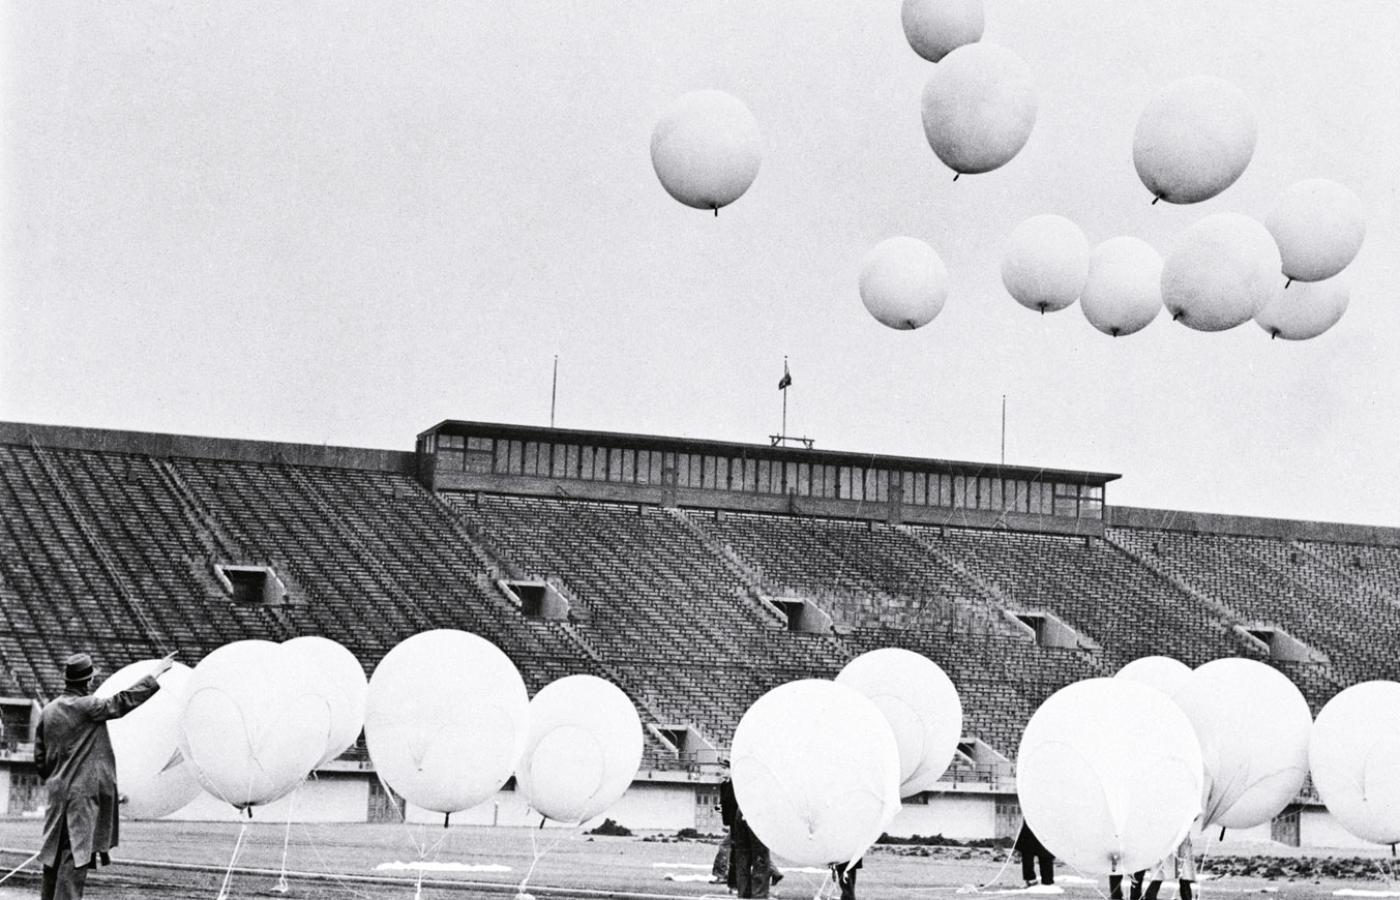 Stadion Stagg Field w Chicago, zanim wybudowano tam pierwszy stos atomowy, 1940 r. Sprzęt naukowy wynoszony przez balony miał sprawdzić intensywność promieniowania kosmicznego nad Ziemią.